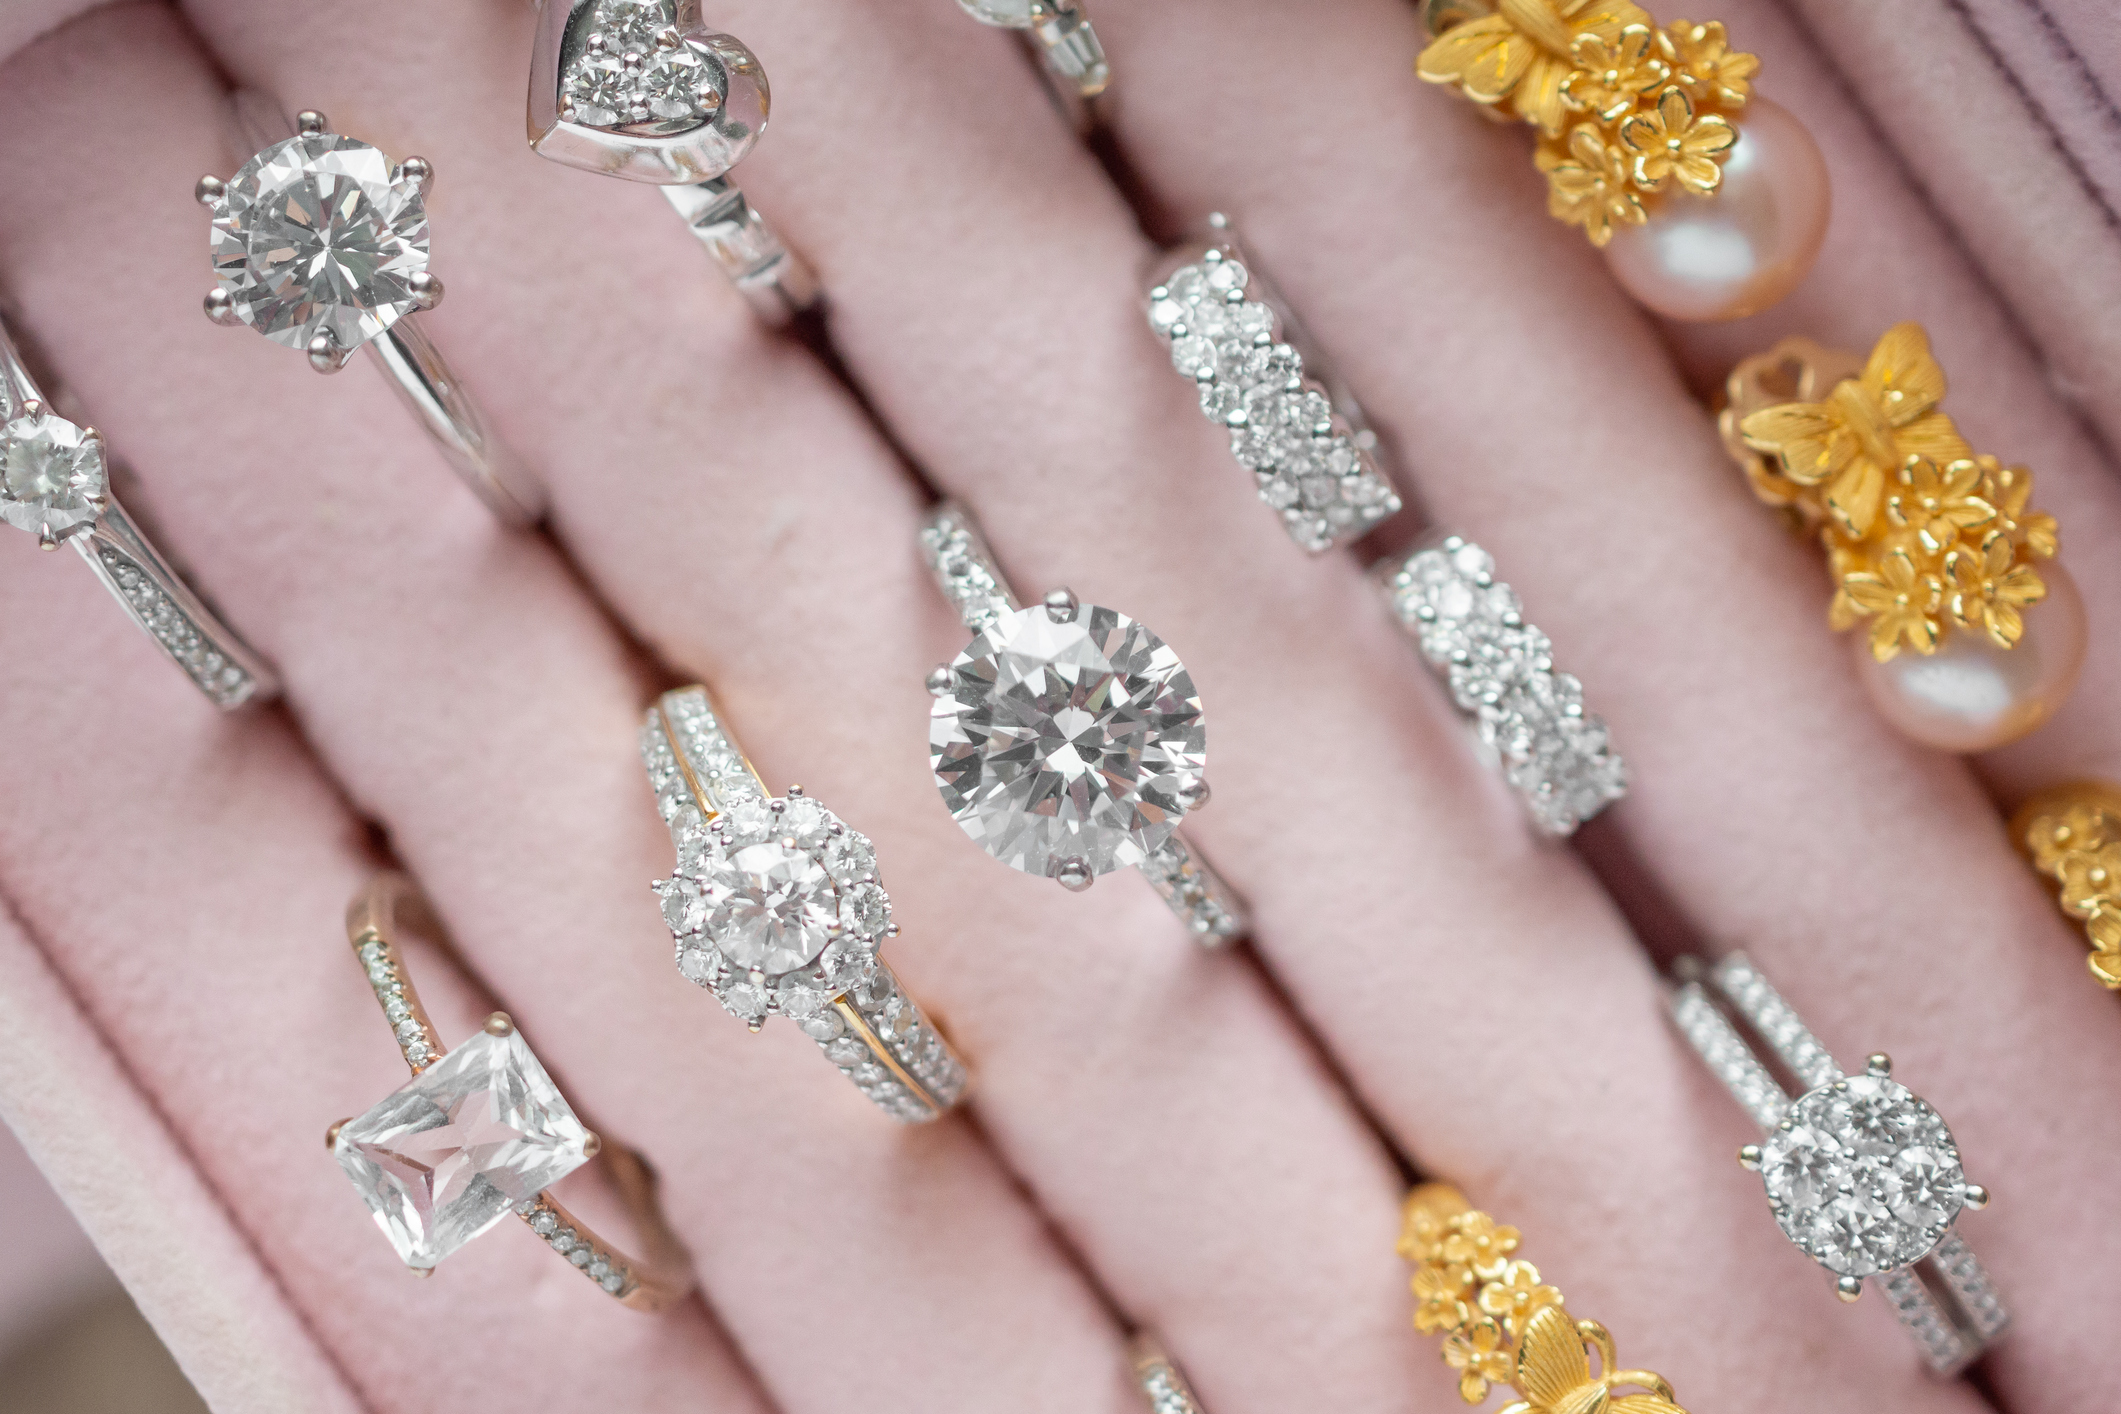 Pourquoi est-ce opportun de vendre des diamants en ce moment ? : analyse du marché actuel​